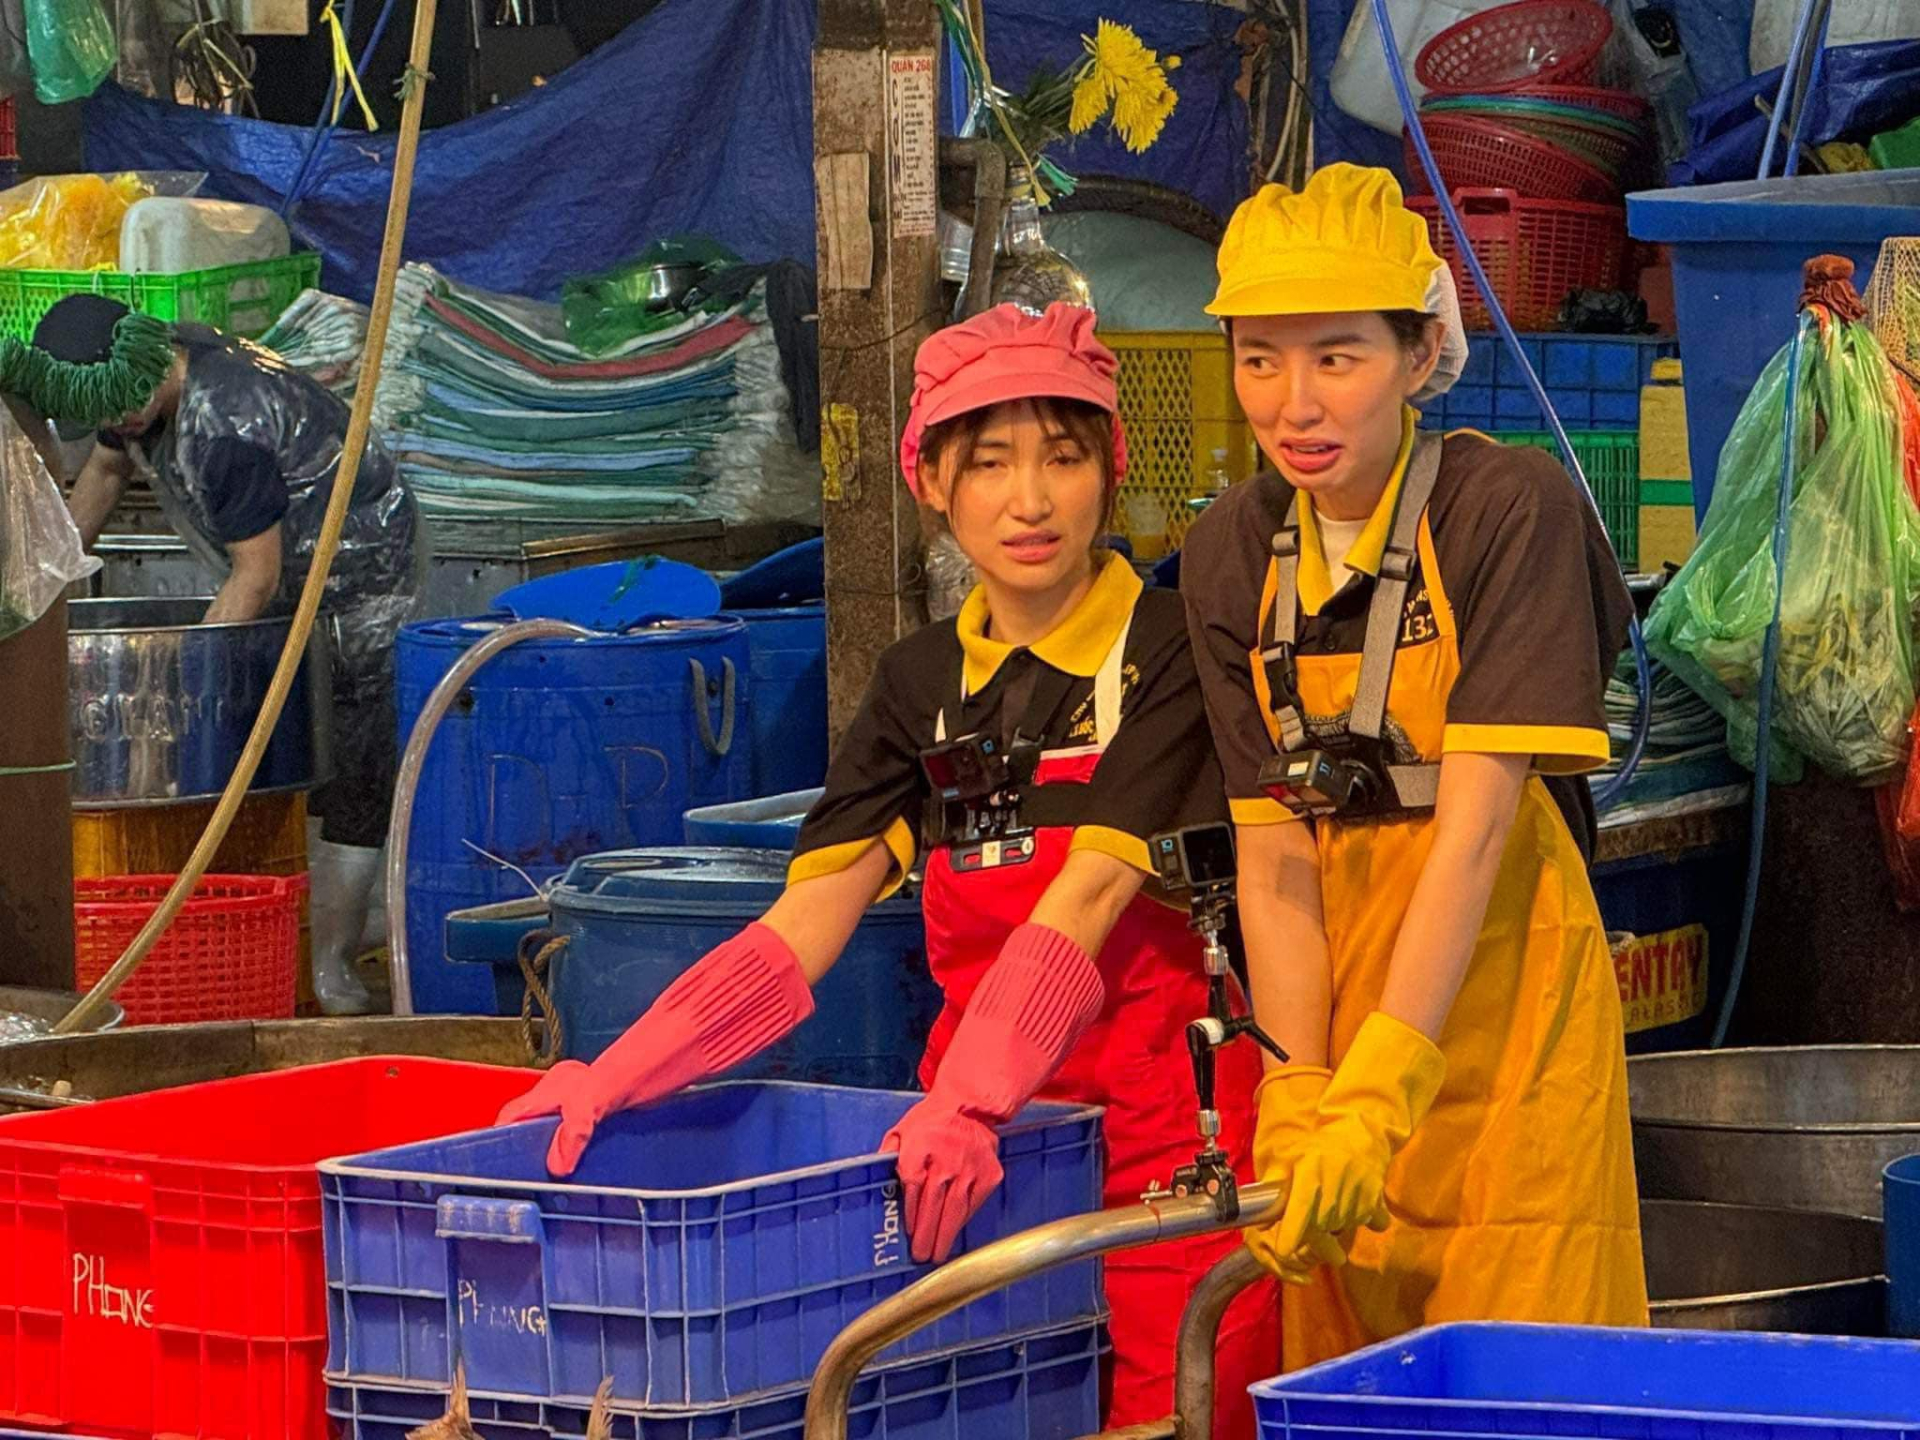 Hoa hậu Thùy Tiên rủ Hòa Minzy bán cá ở chợ Bình Điền - ảnh 4